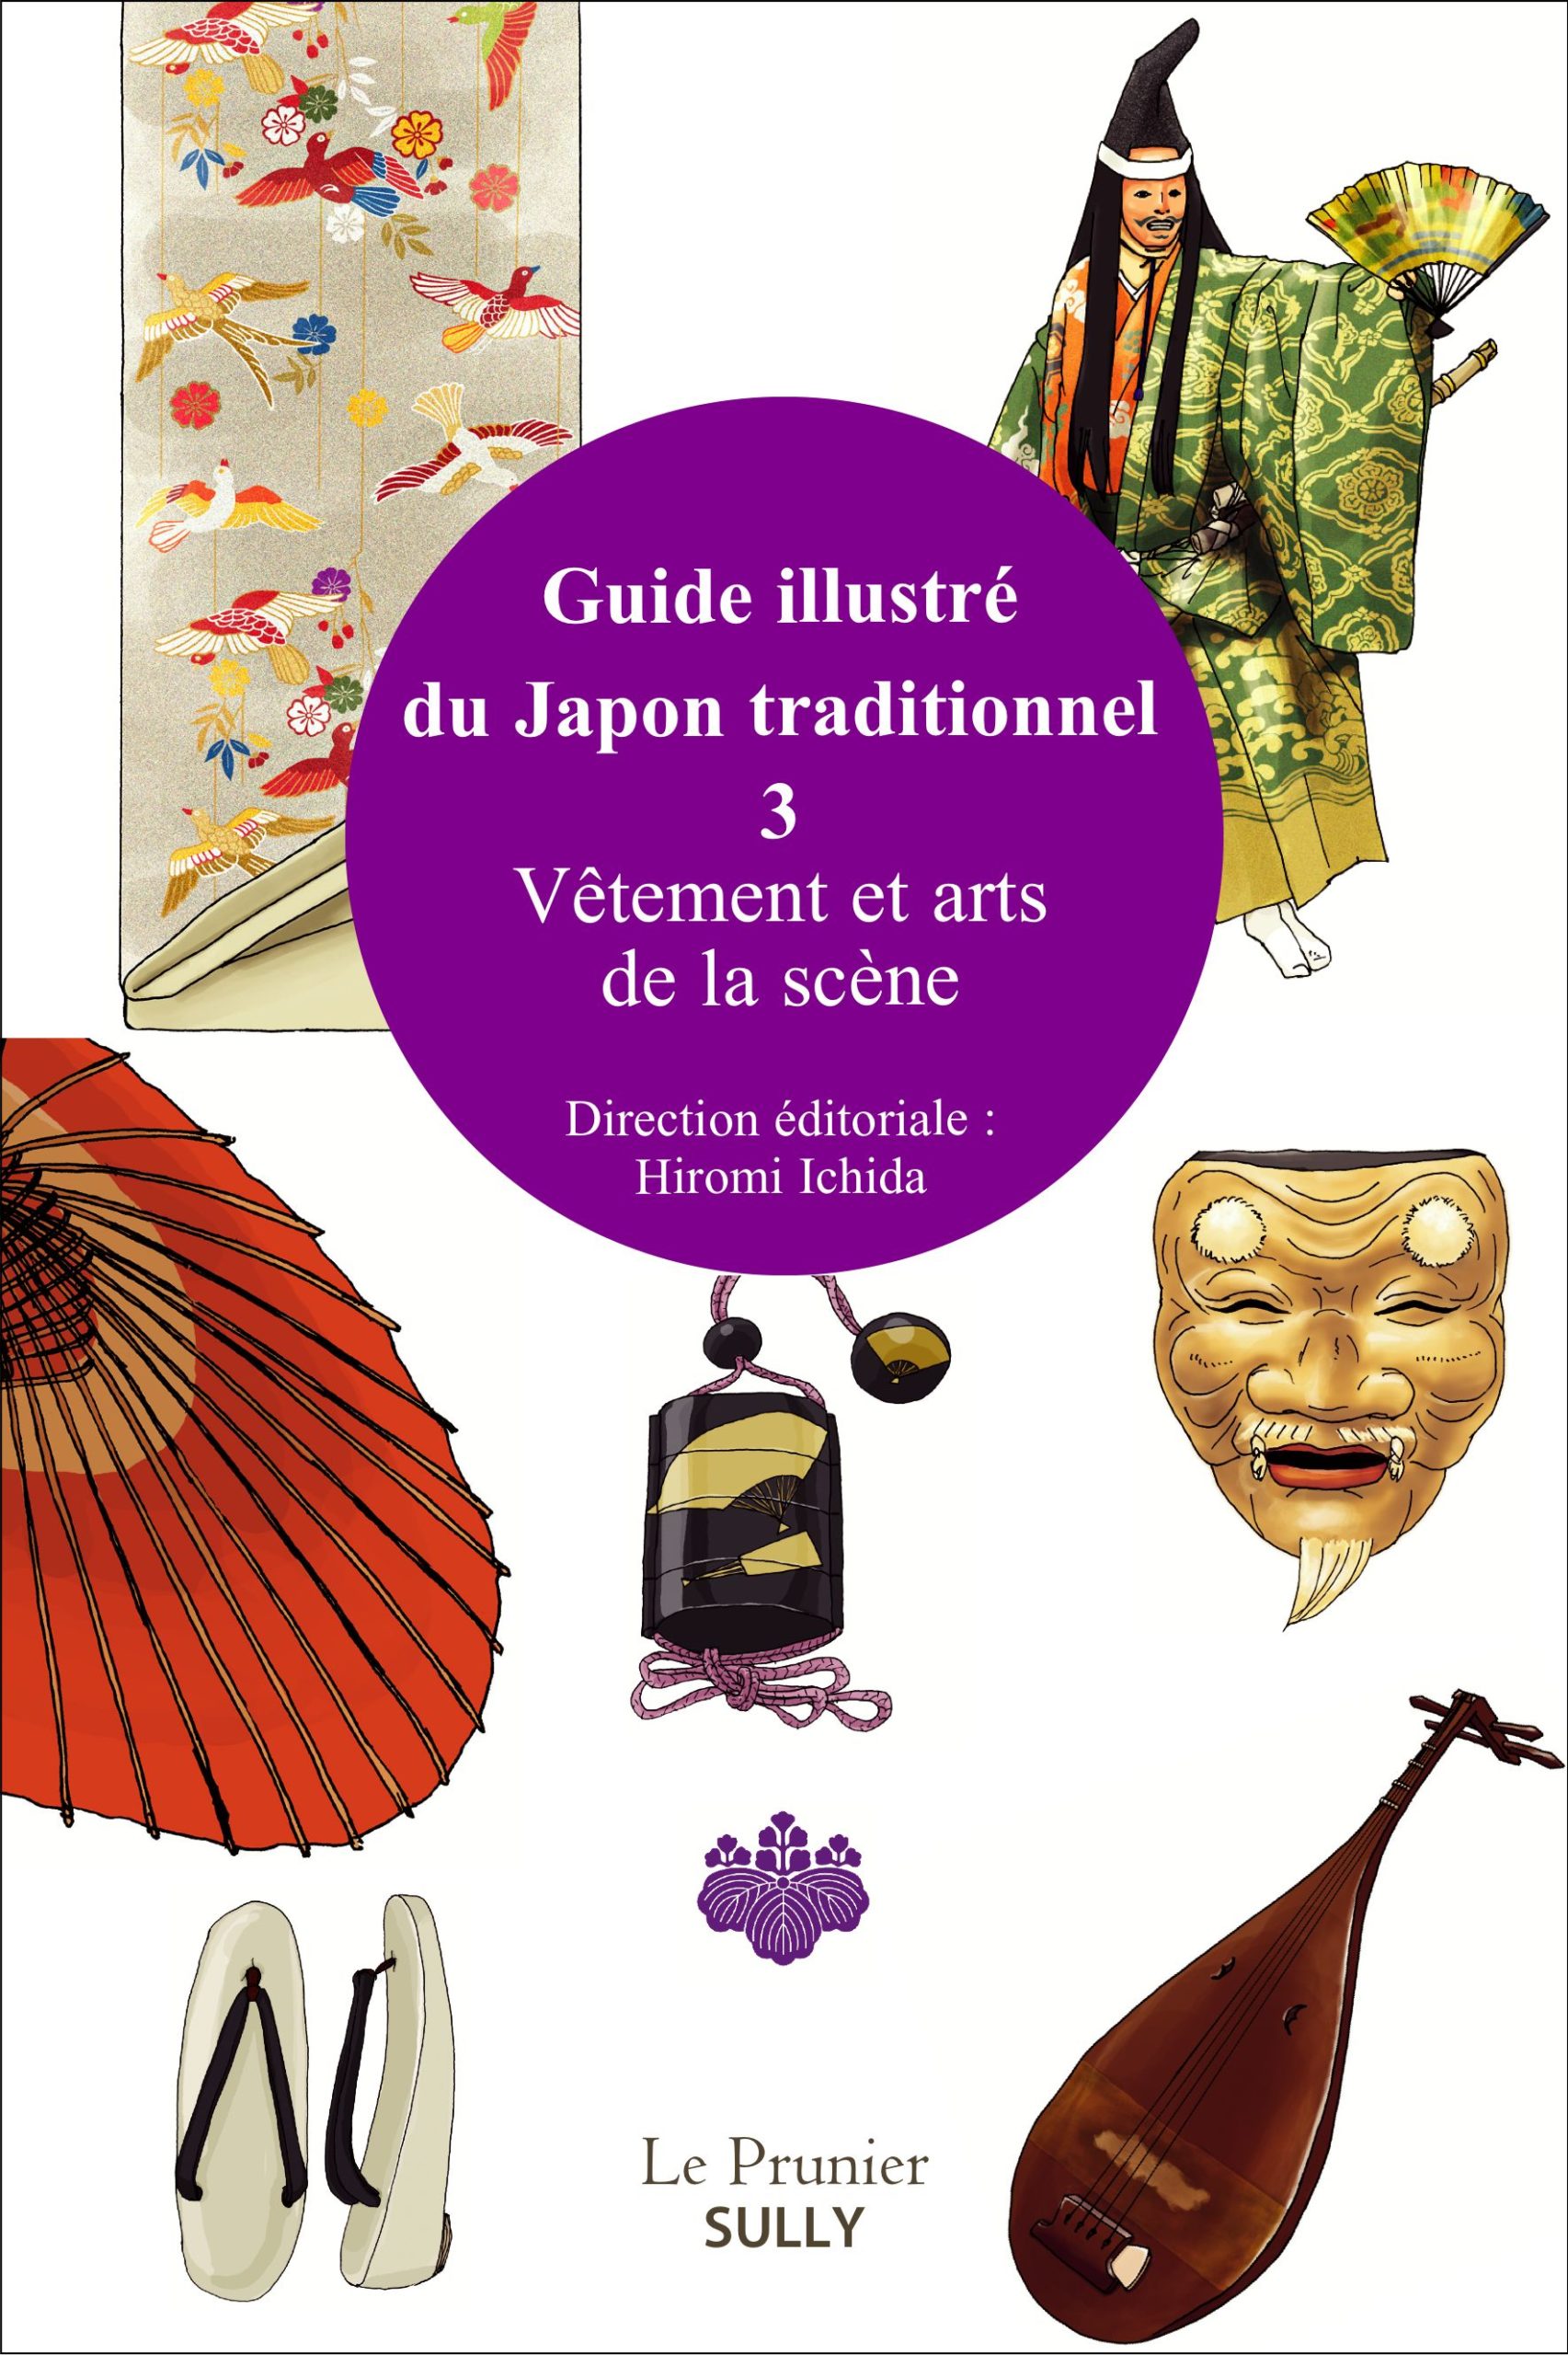 Le Guide illustré du Japon traditionnel paraît aux éditions Sully.